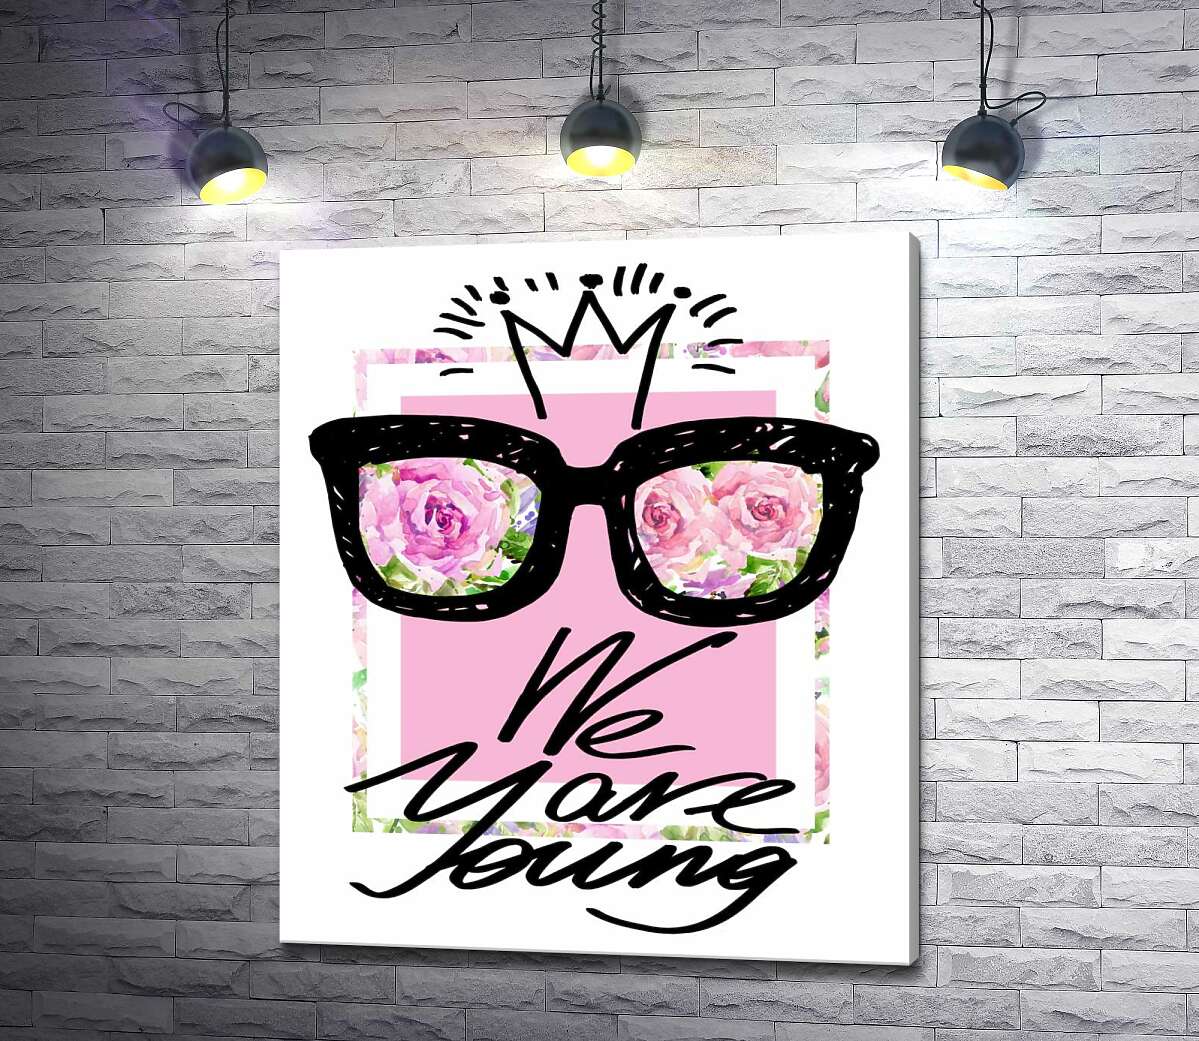 картина Чорні окуляри з короною над написом "we are young"